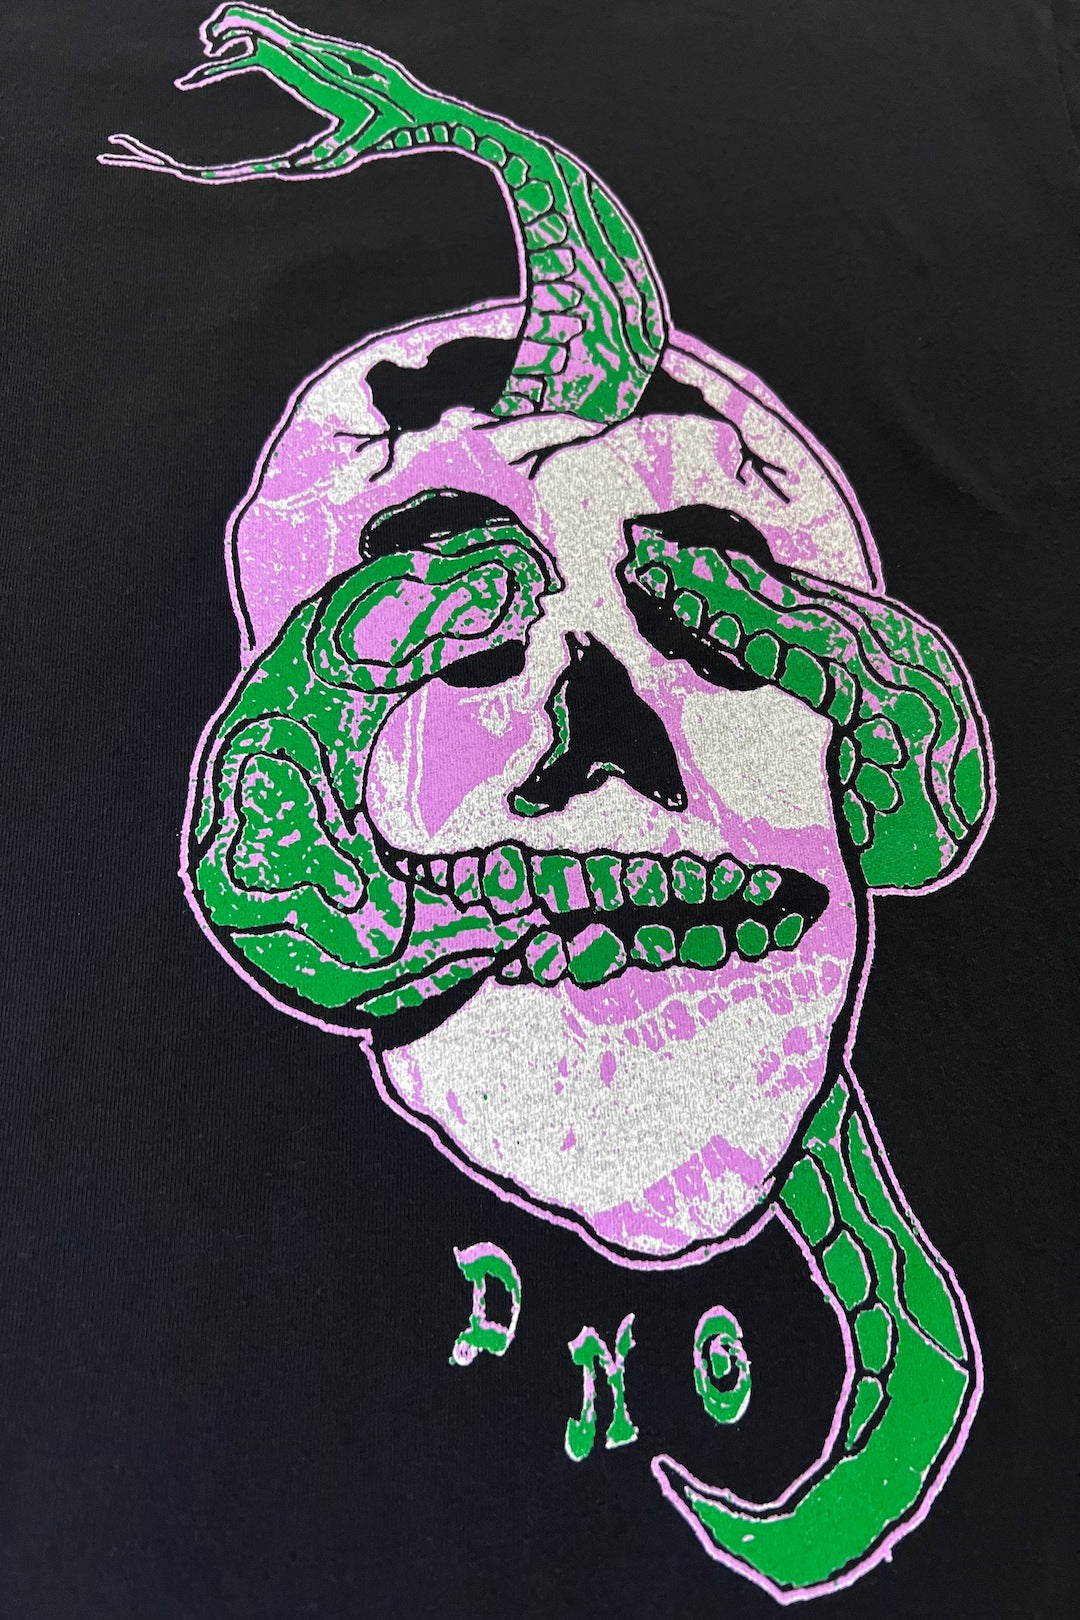 Snake Skull T-Shirt